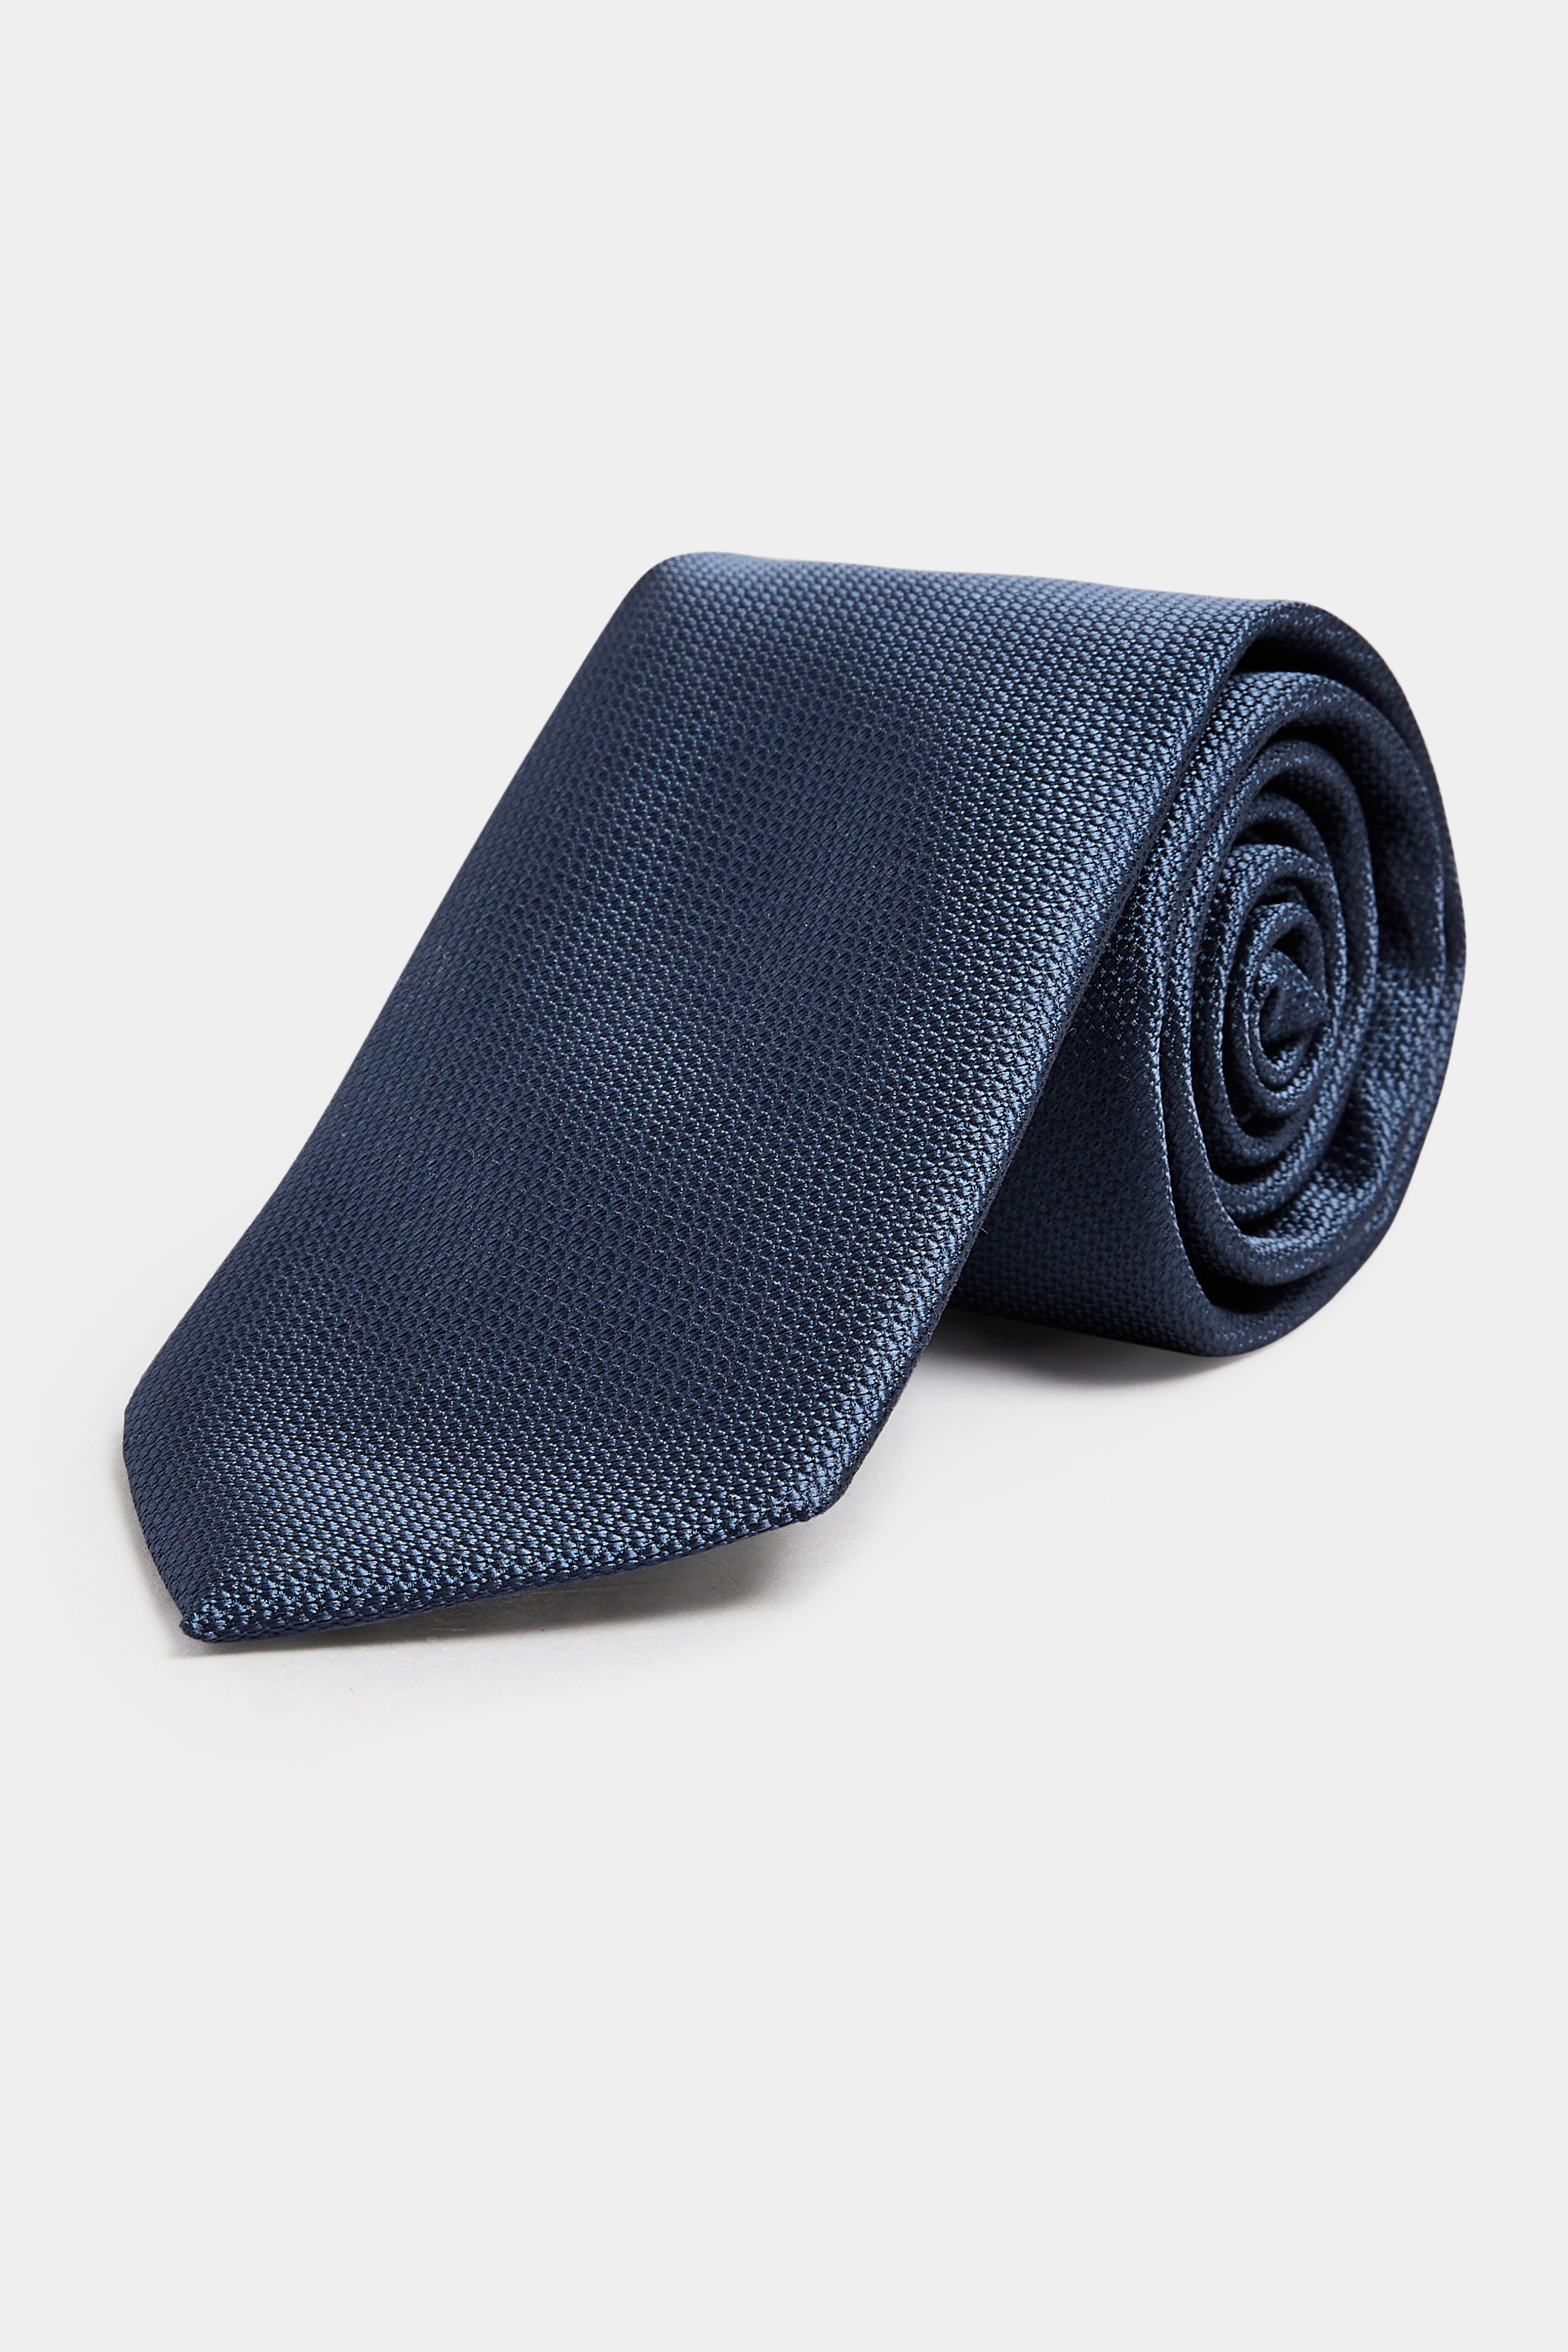 BadRhino Navy Blue Plain Textured Tie | BadRhino 1